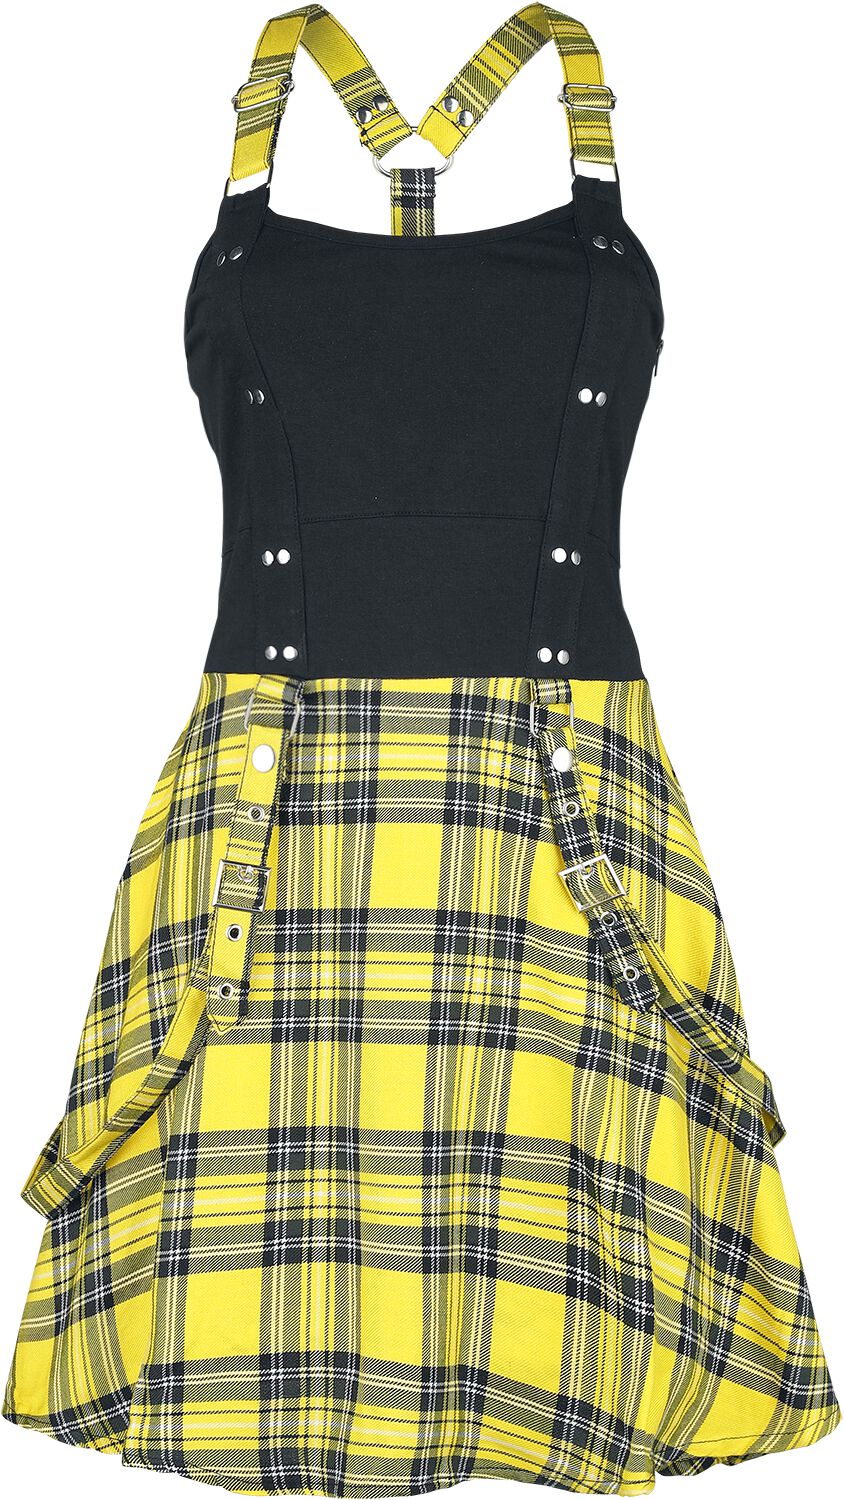 Heartless Kurzes Kleid - Incantation Dress - XS bis 4XL - für Damen - Größe L - schwarz/gelb